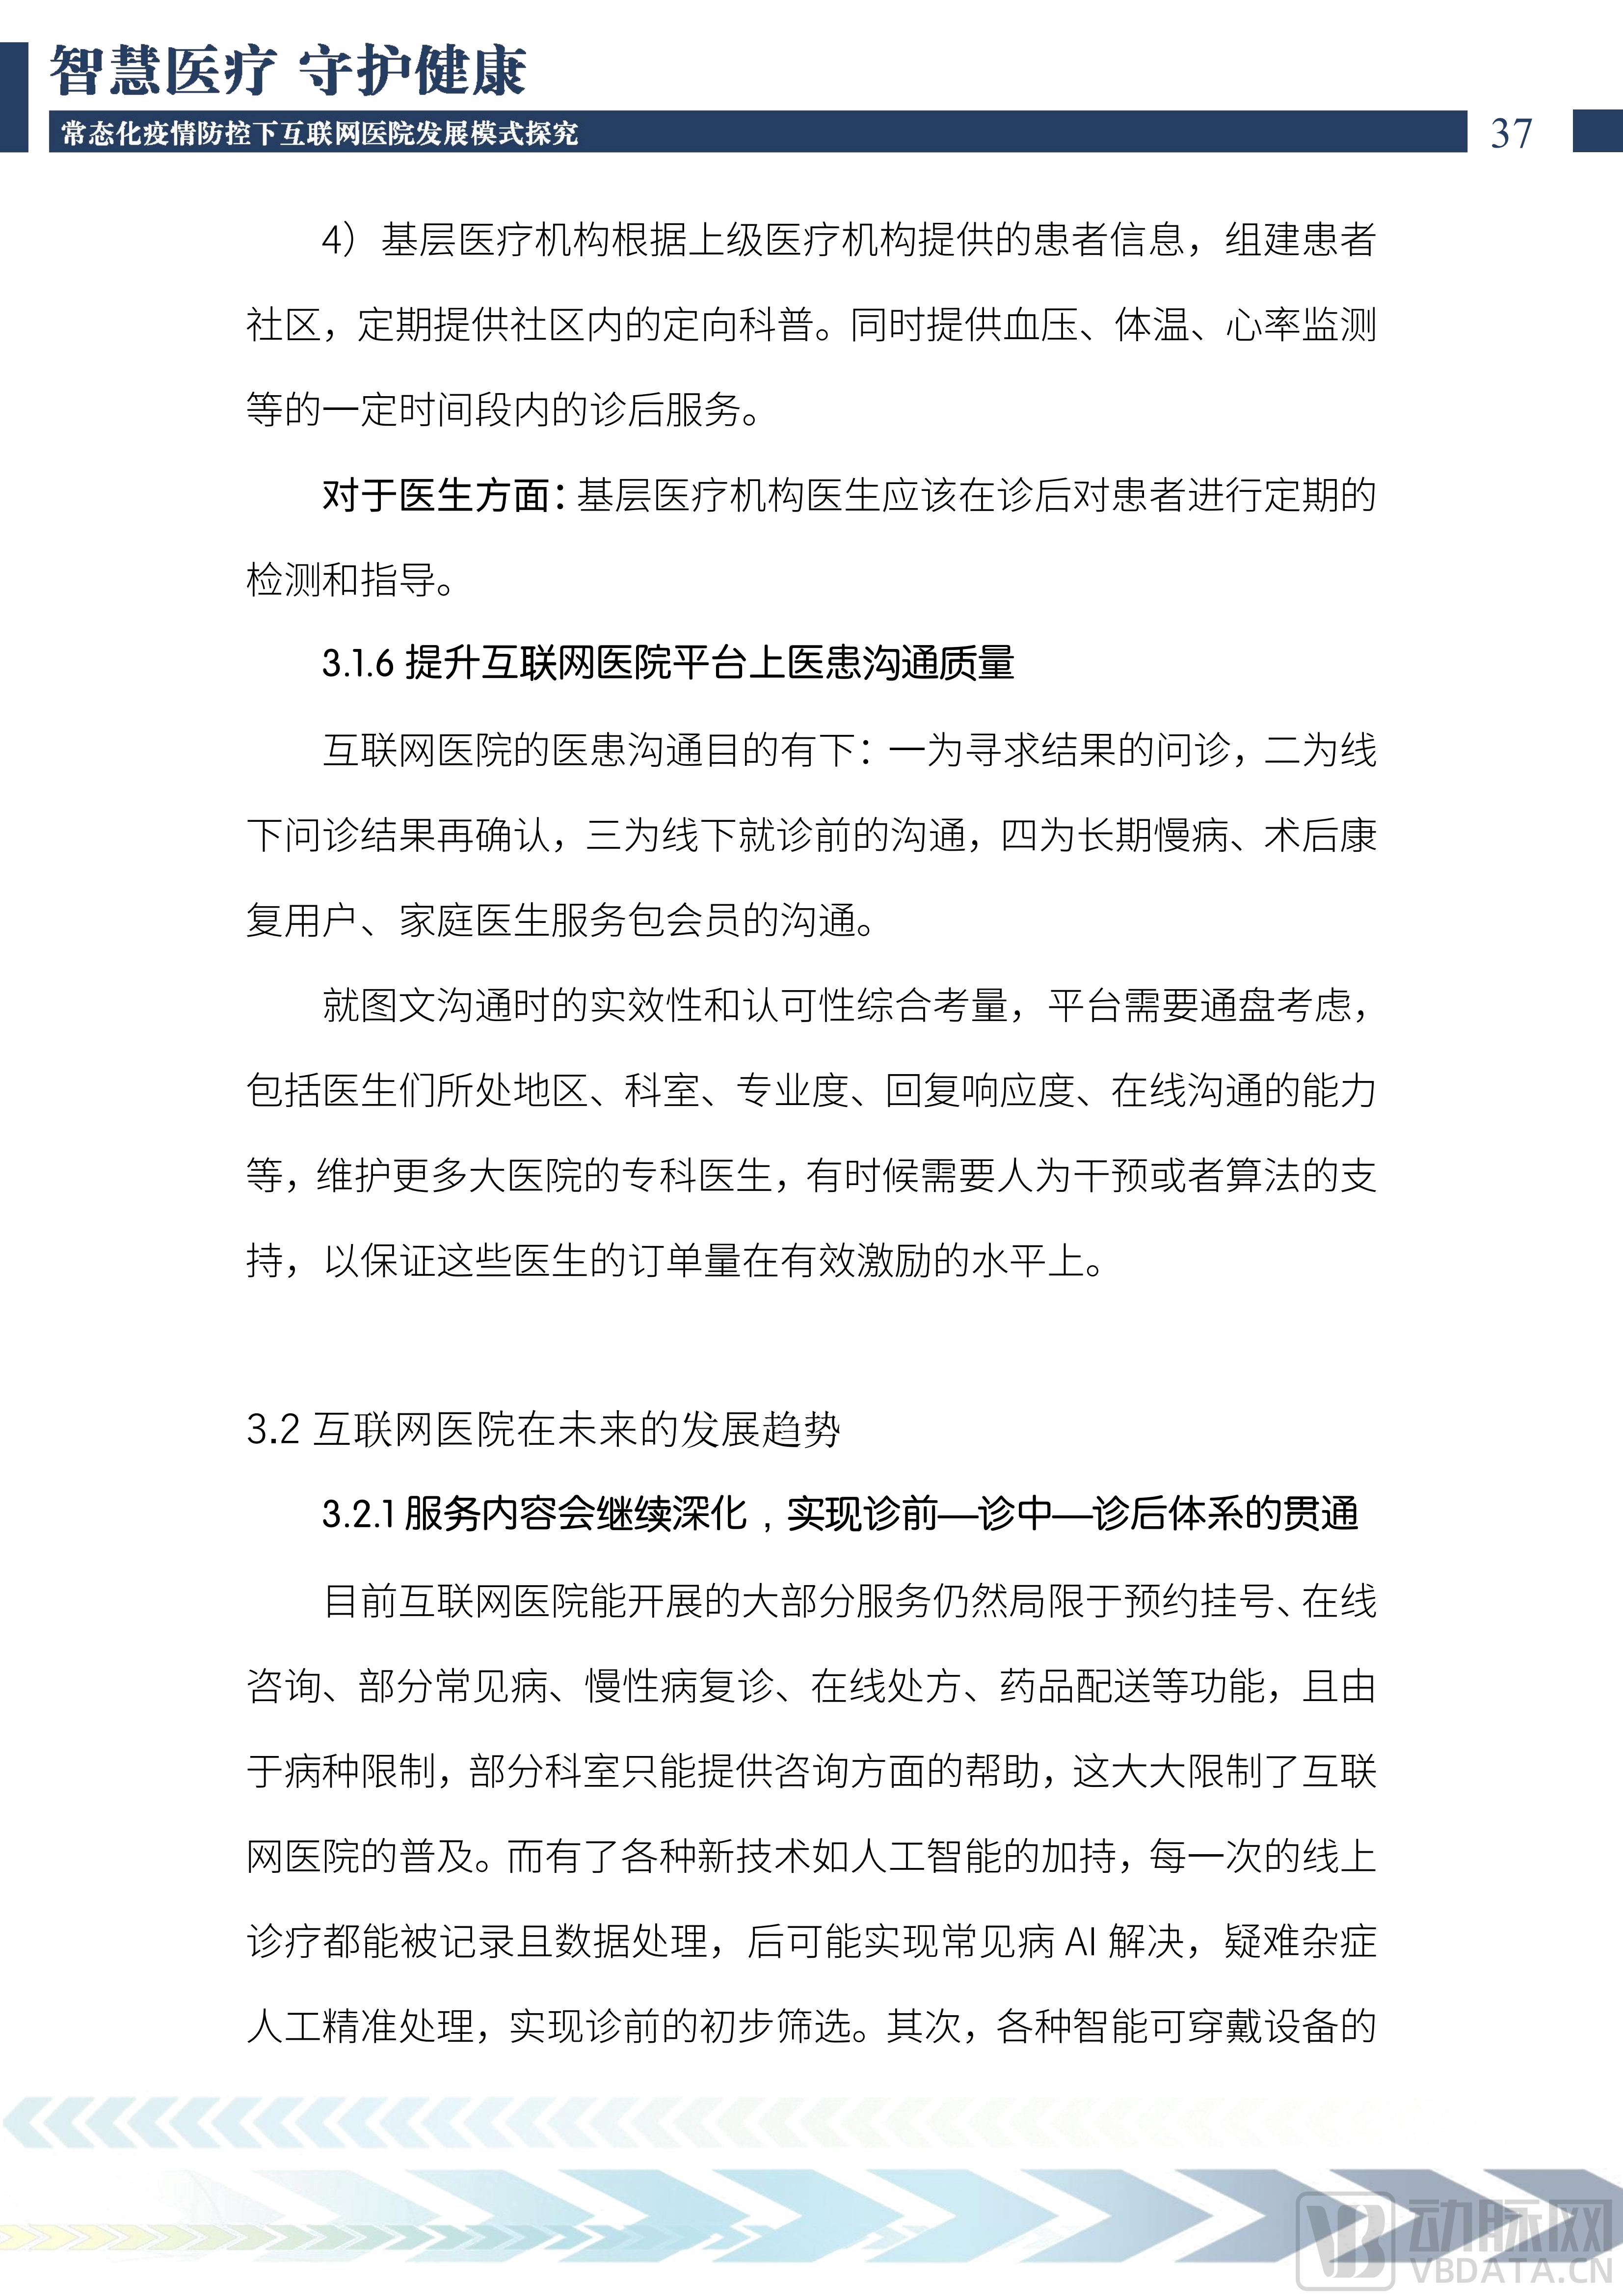 2022中国互联网医院发展调研报告(1)_38.png